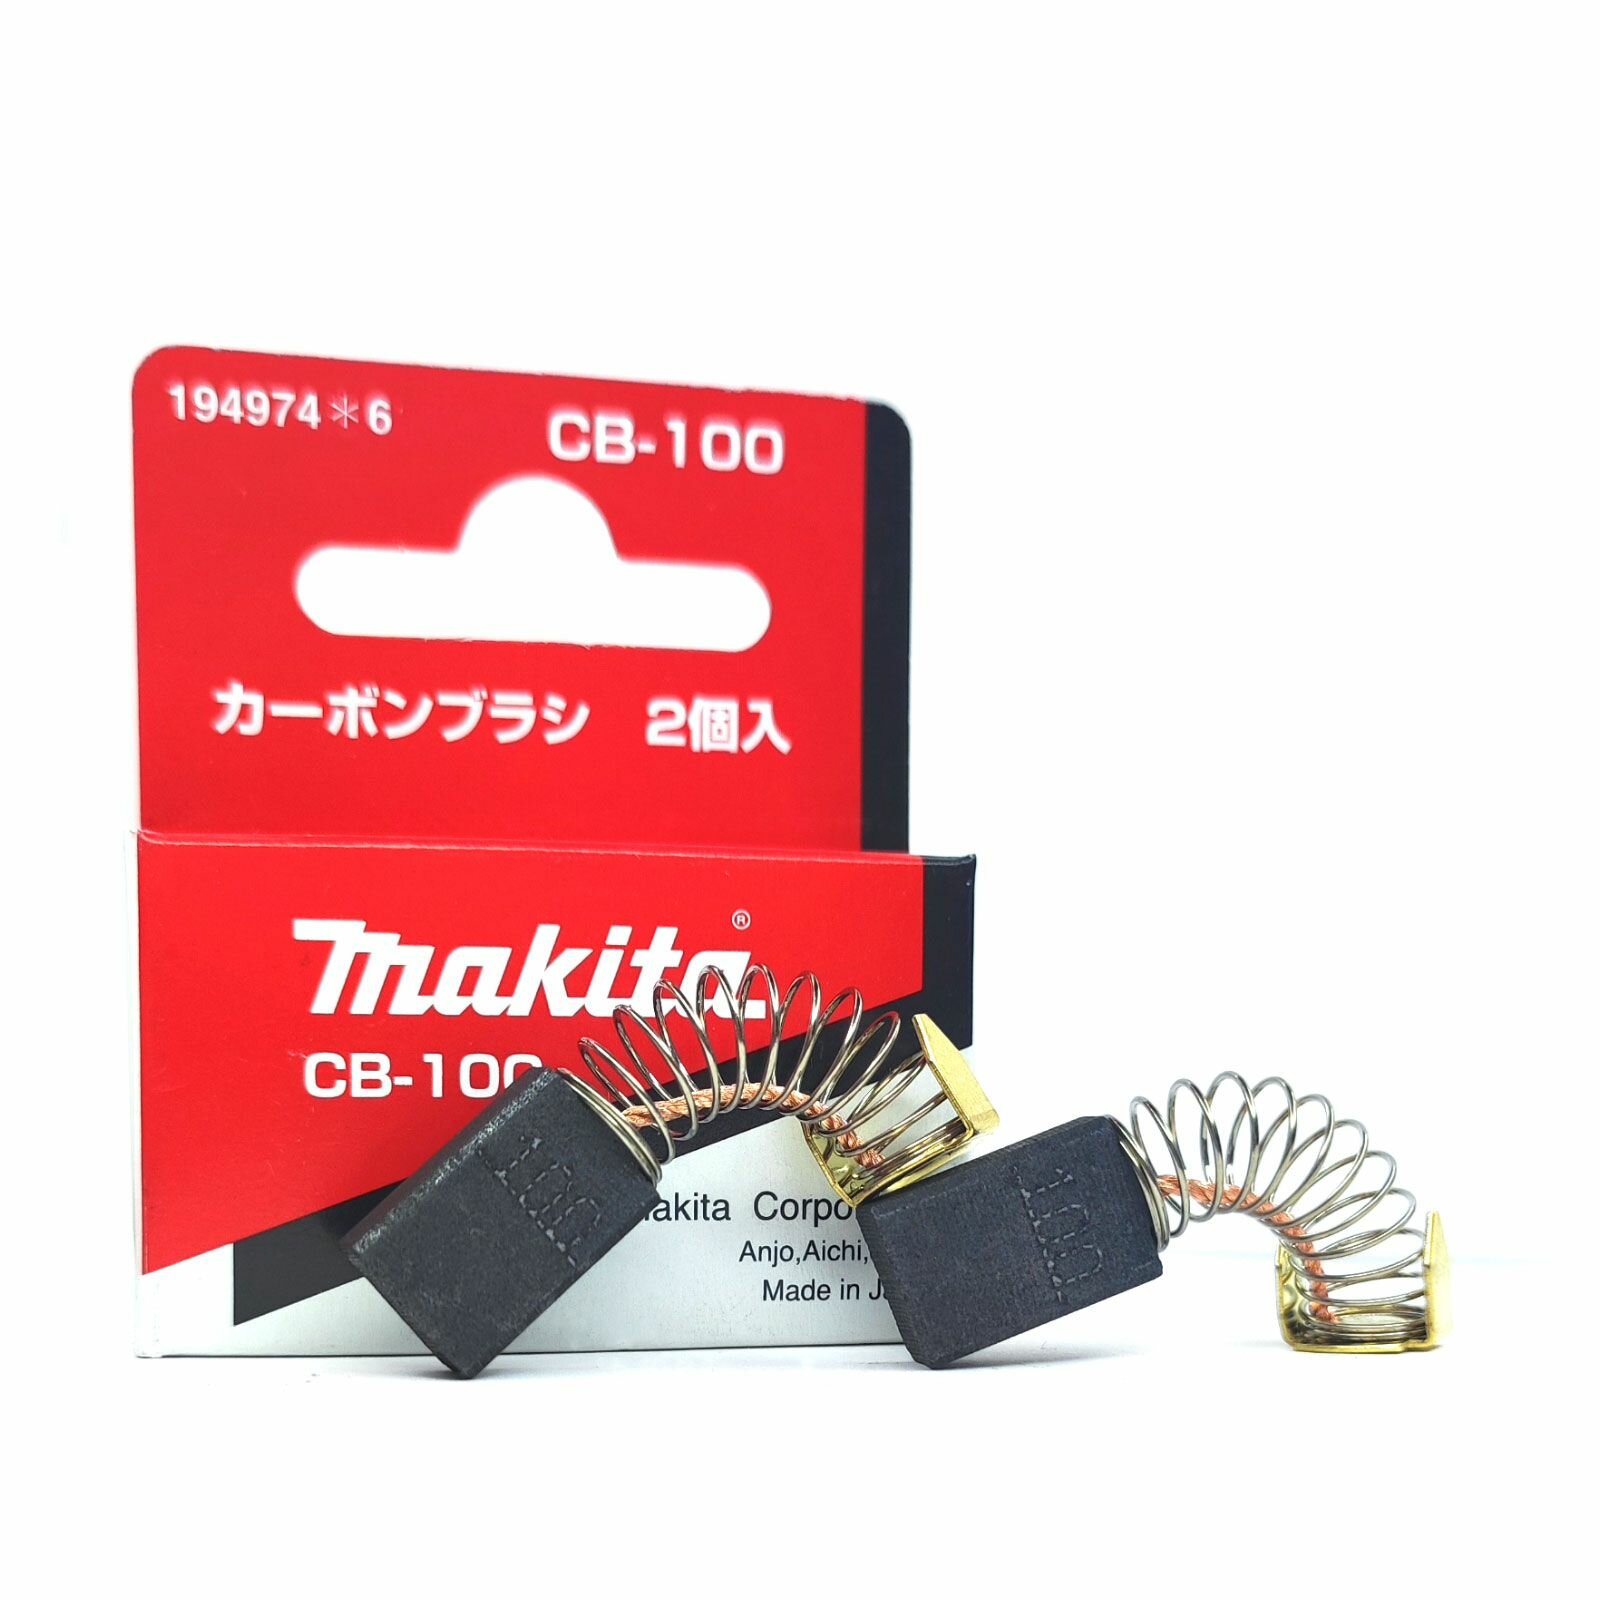 Угольные щетки(пара) Makita CB-100(194974-6 181030-1)